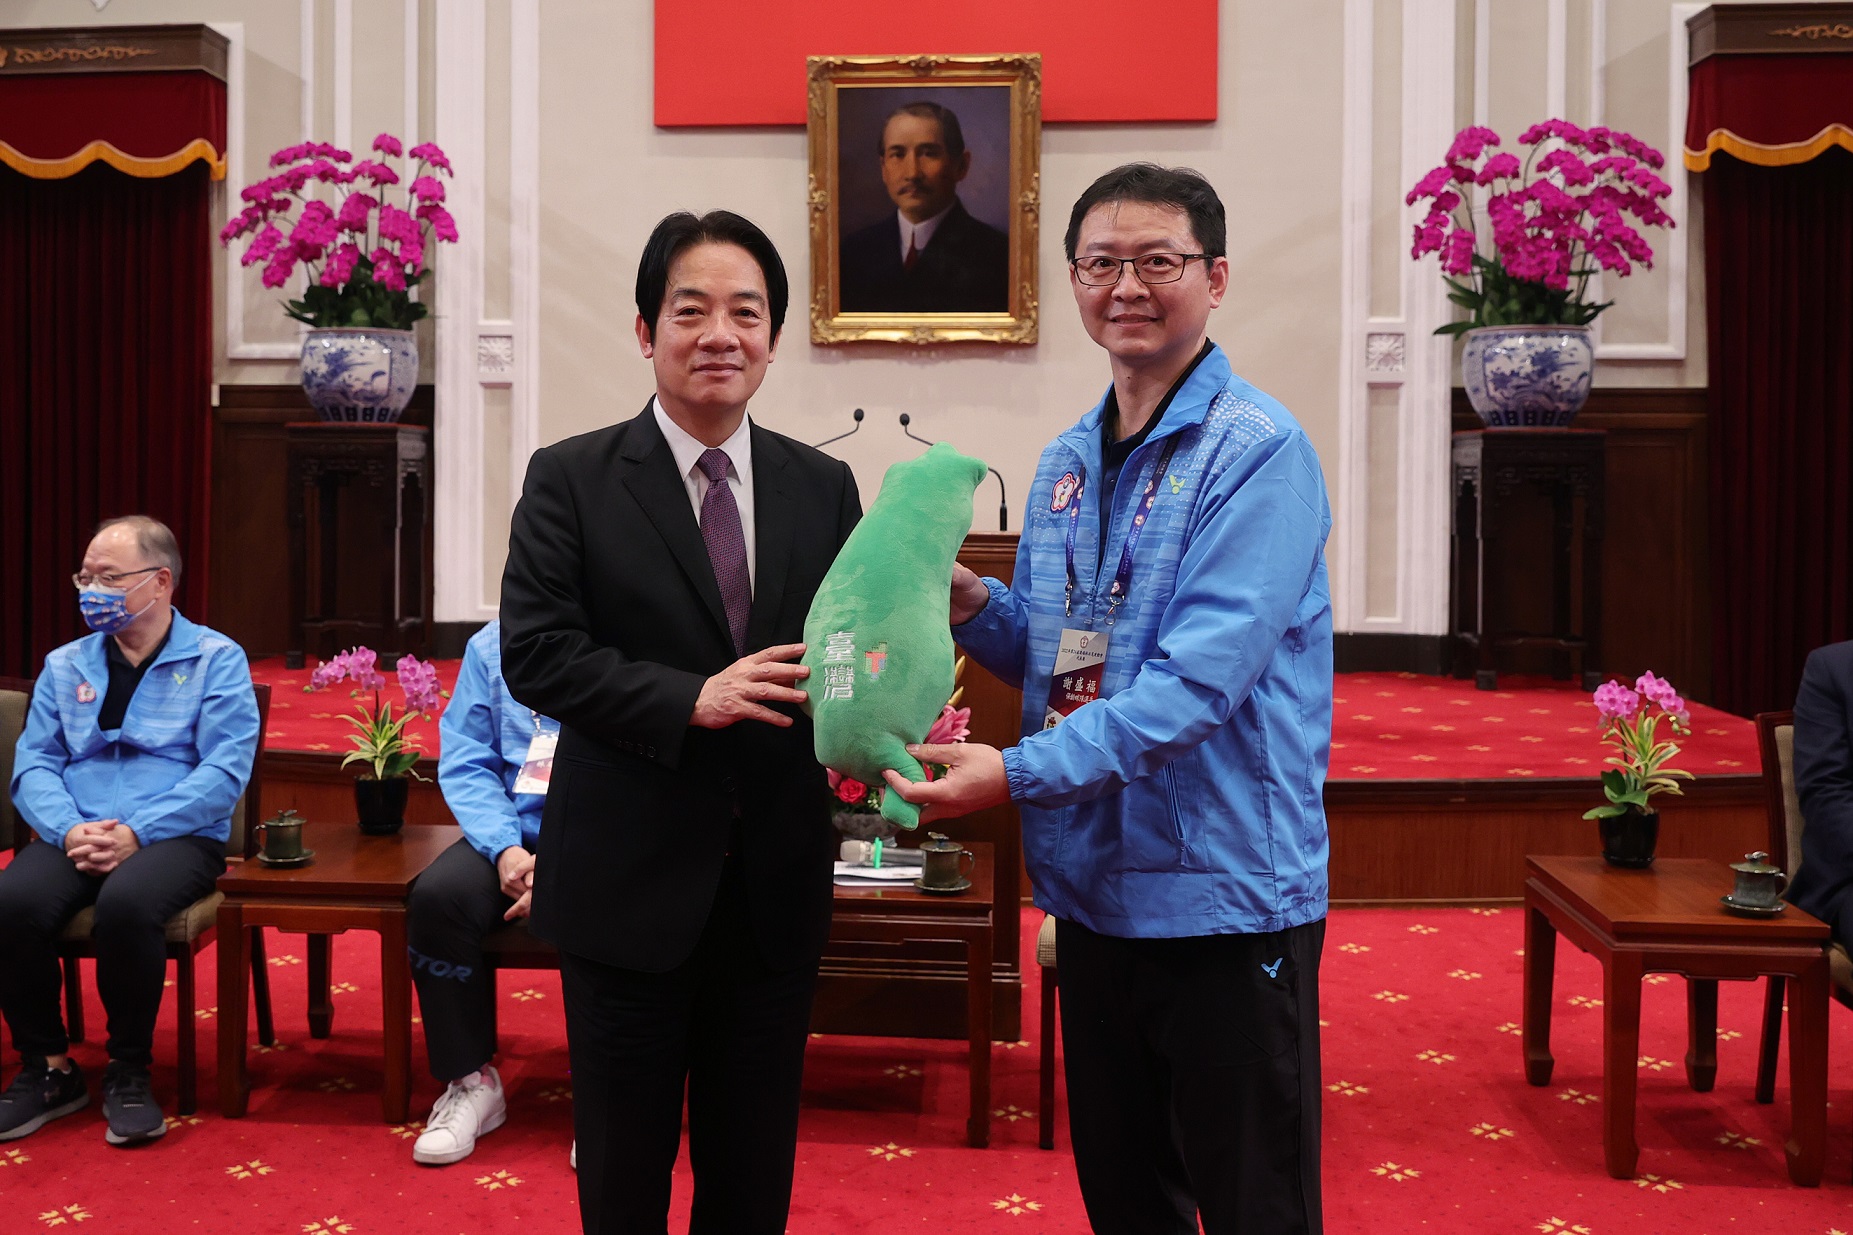 賴清德副總統致贈代表團紀念品由陳勝福選手代表接受。體育署提供